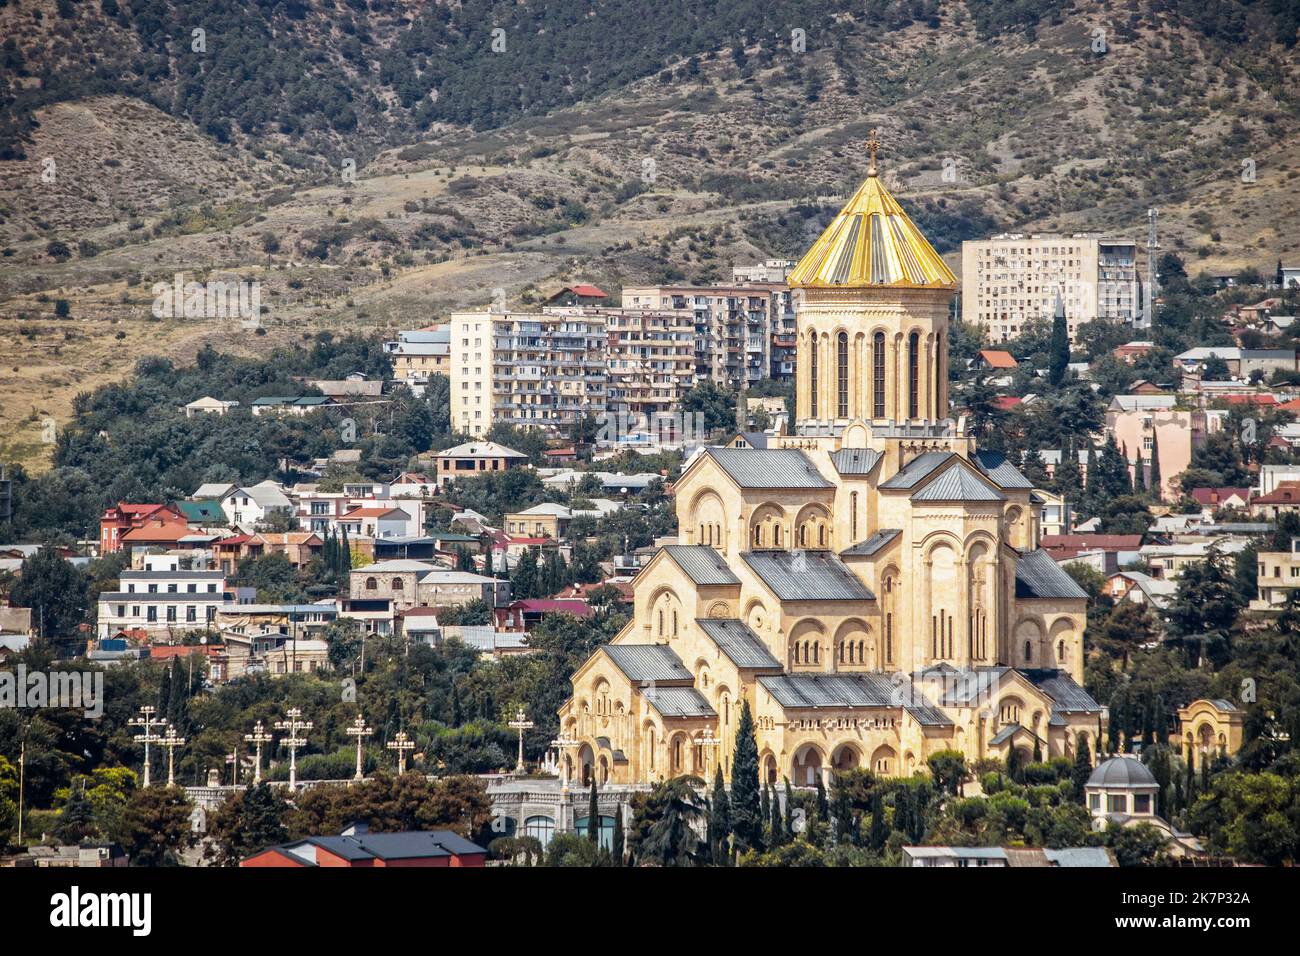 La Cattedrale della Santissima Trinità di Tbilisi Georgia - Sameba - cattedrale principale della Chiesa ortodossa georgiana - con cupola dorata Foto Stock